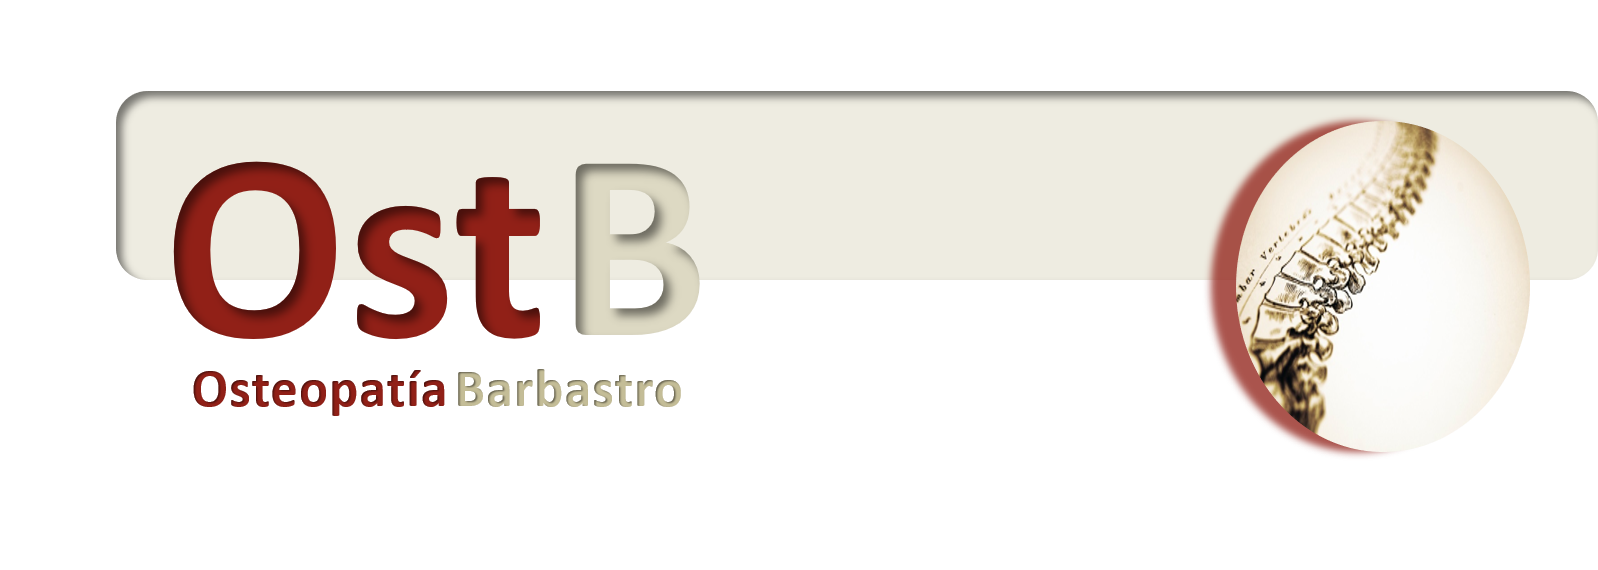 Osteopatía Barbastro